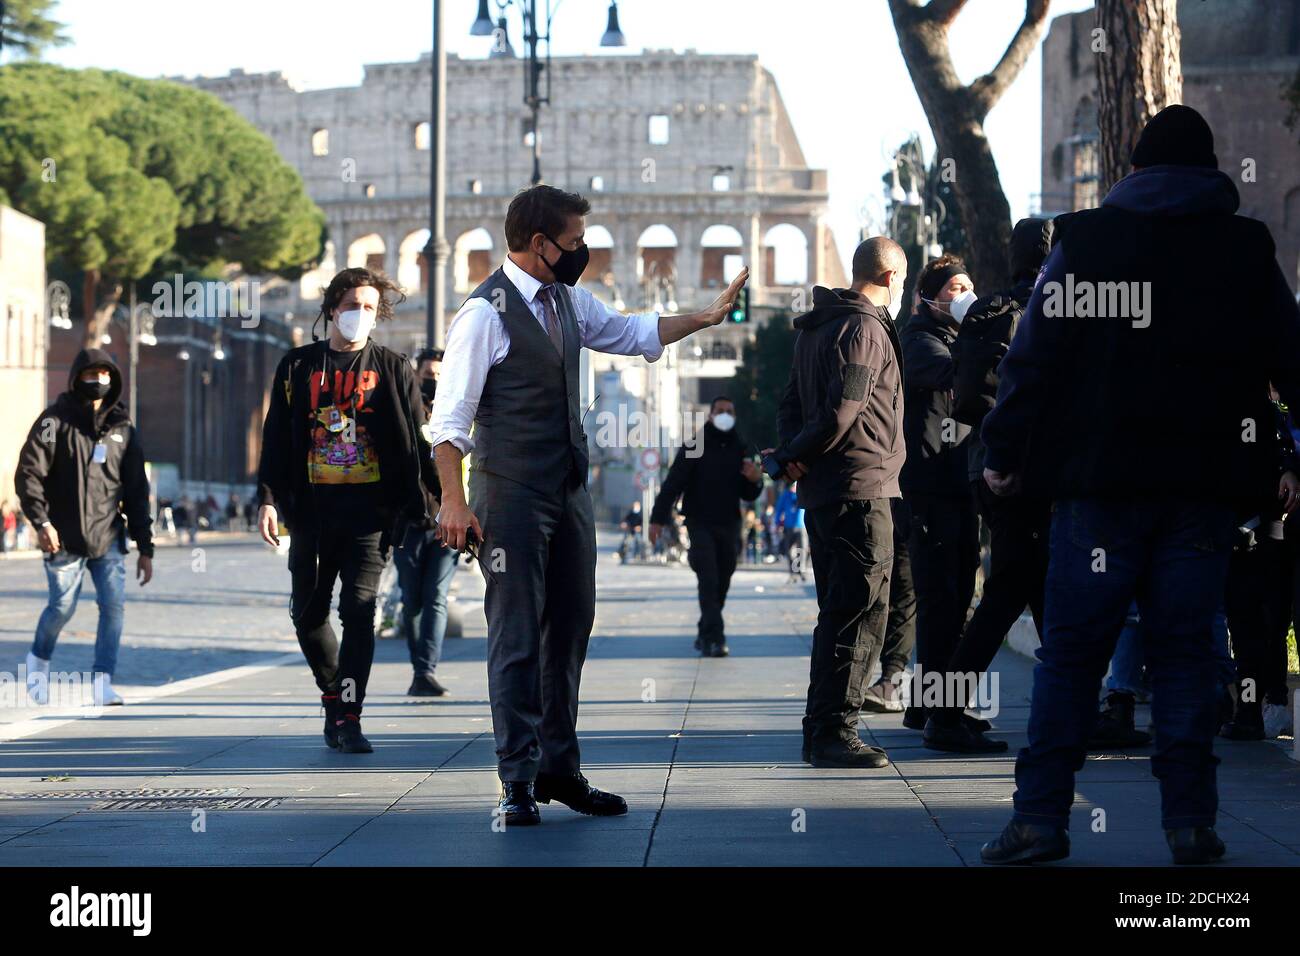 Roma, Italia. 21 Nov 2020. L'attore Tom Cruise saluta i suoi fan e sullo sfondo il Colosseo, sul set del film Missione impossibile 7 a fori Imperiali a Roma. Roma (Italia), 21 novembre 2020 Photo Samantha Zucchi Insifefoto Credit: Insifefoto srl/Alamy Live News Foto Stock